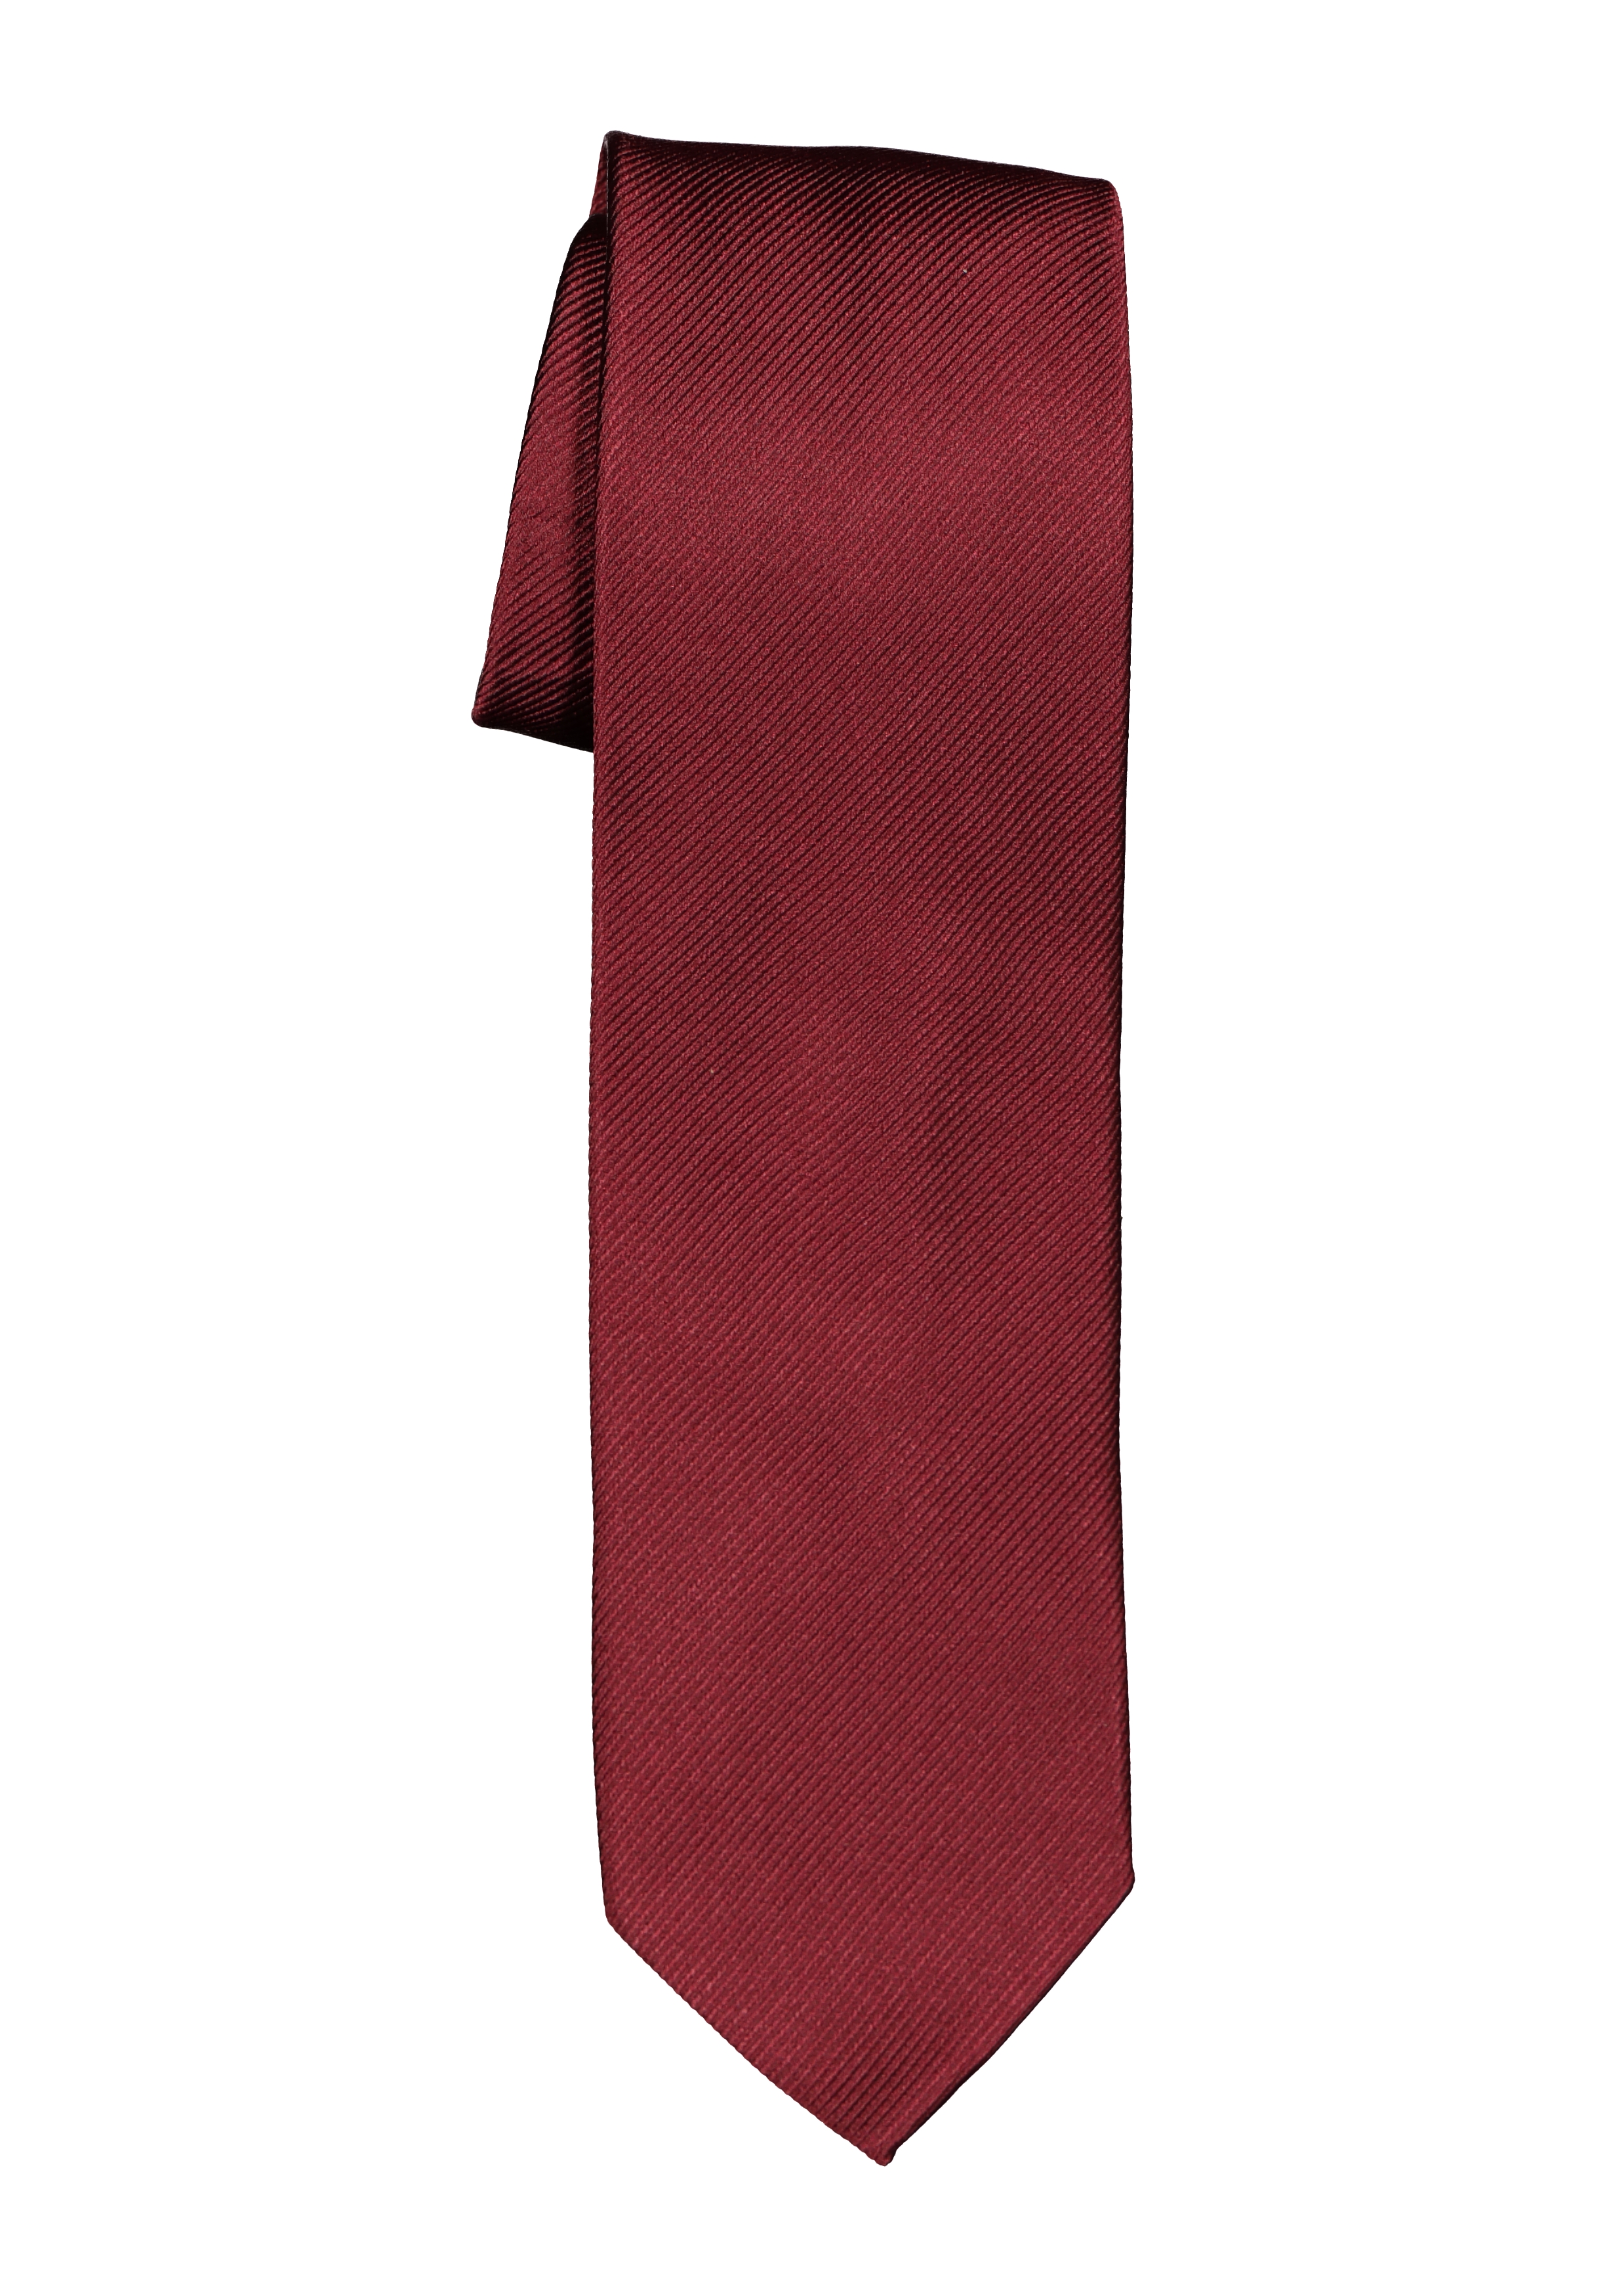 stoomboot Er is een trend Verhogen Michaelis smalle stropdas, bordeaux rood - Shop de nieuwste voorjaarsmode